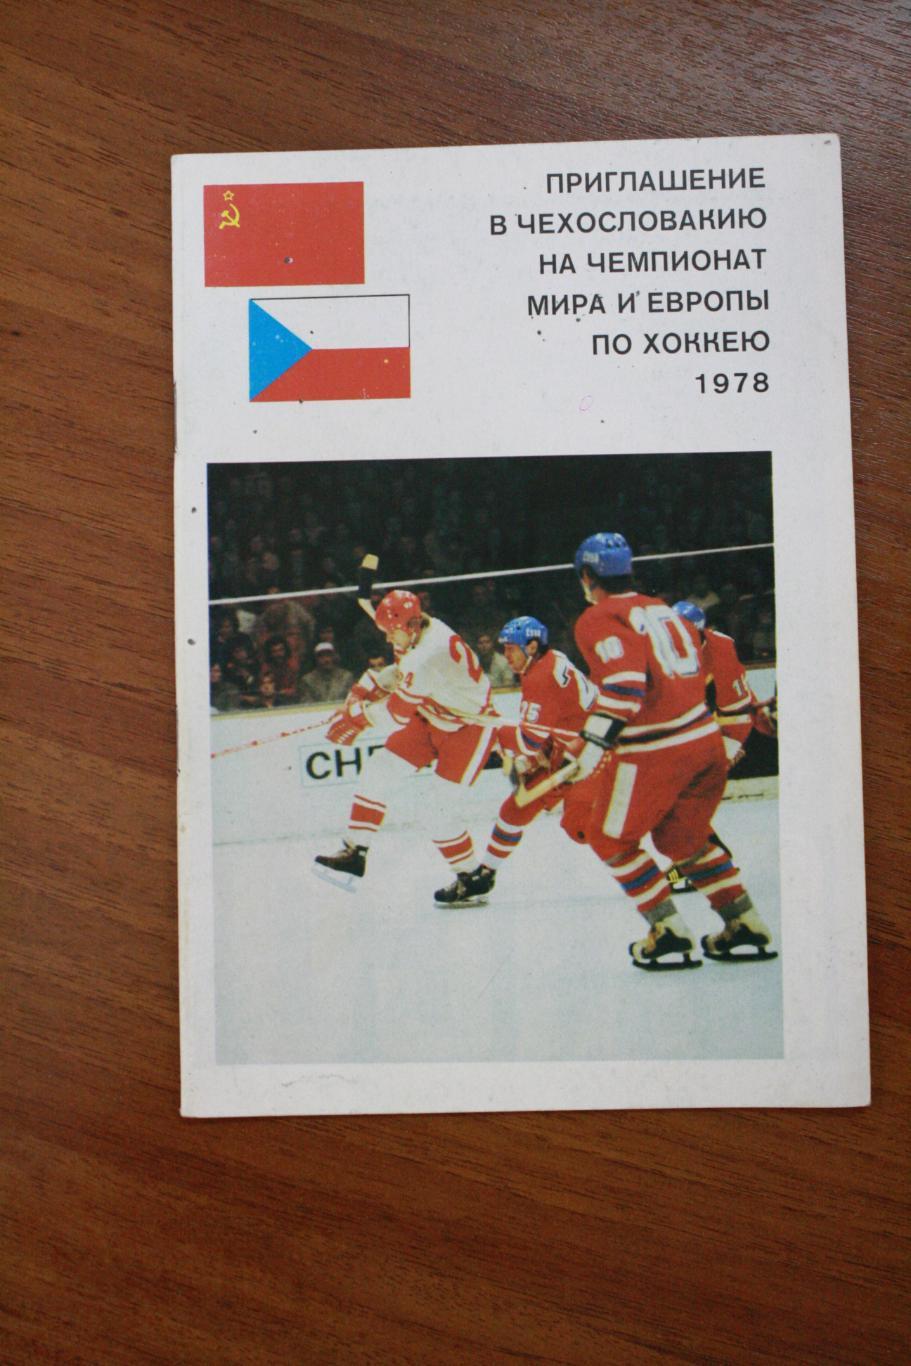 Буклет - Приглашение в Чехословакию на Чемпионат Мира и Европы по хоккею 1978